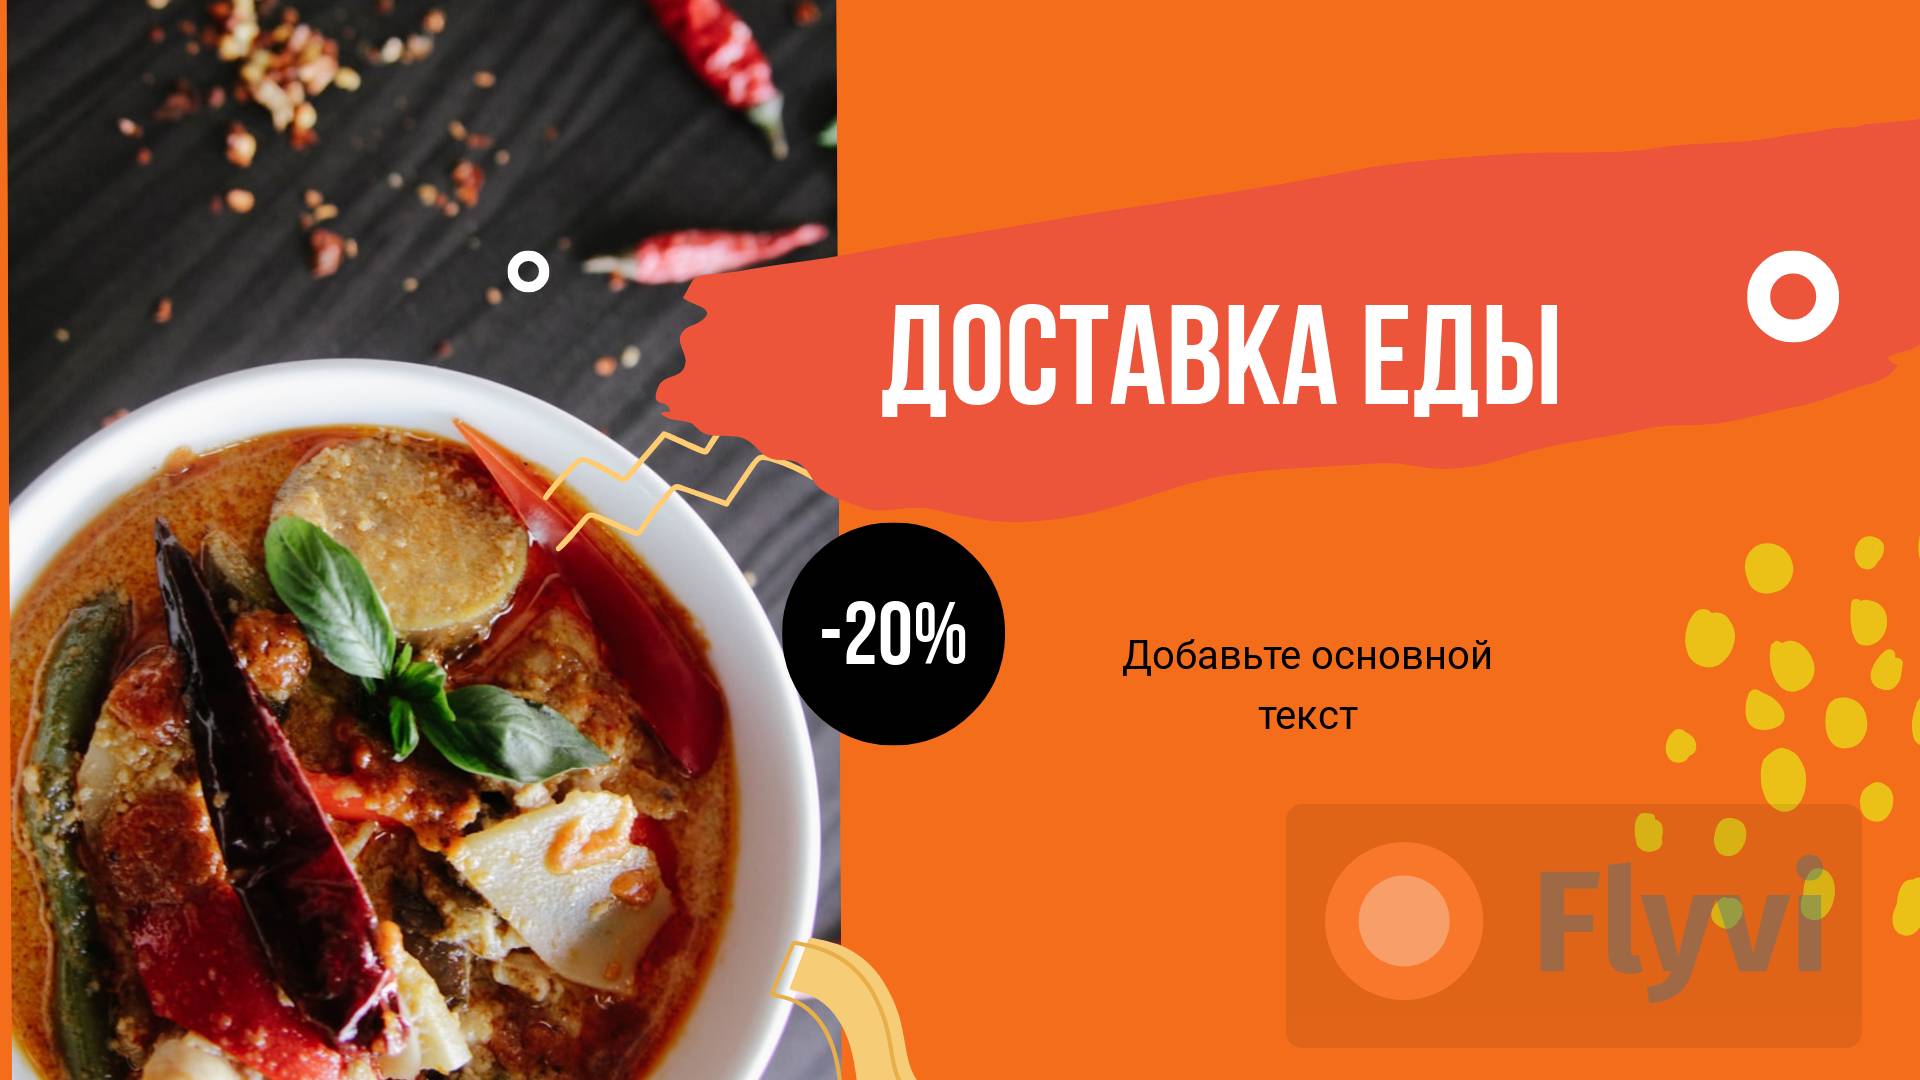 Броский пост в кислотно-оранжевом цвете с порцией острого рыбного супа в порционной пиале для рекламы доставки аппетитной еды на дом